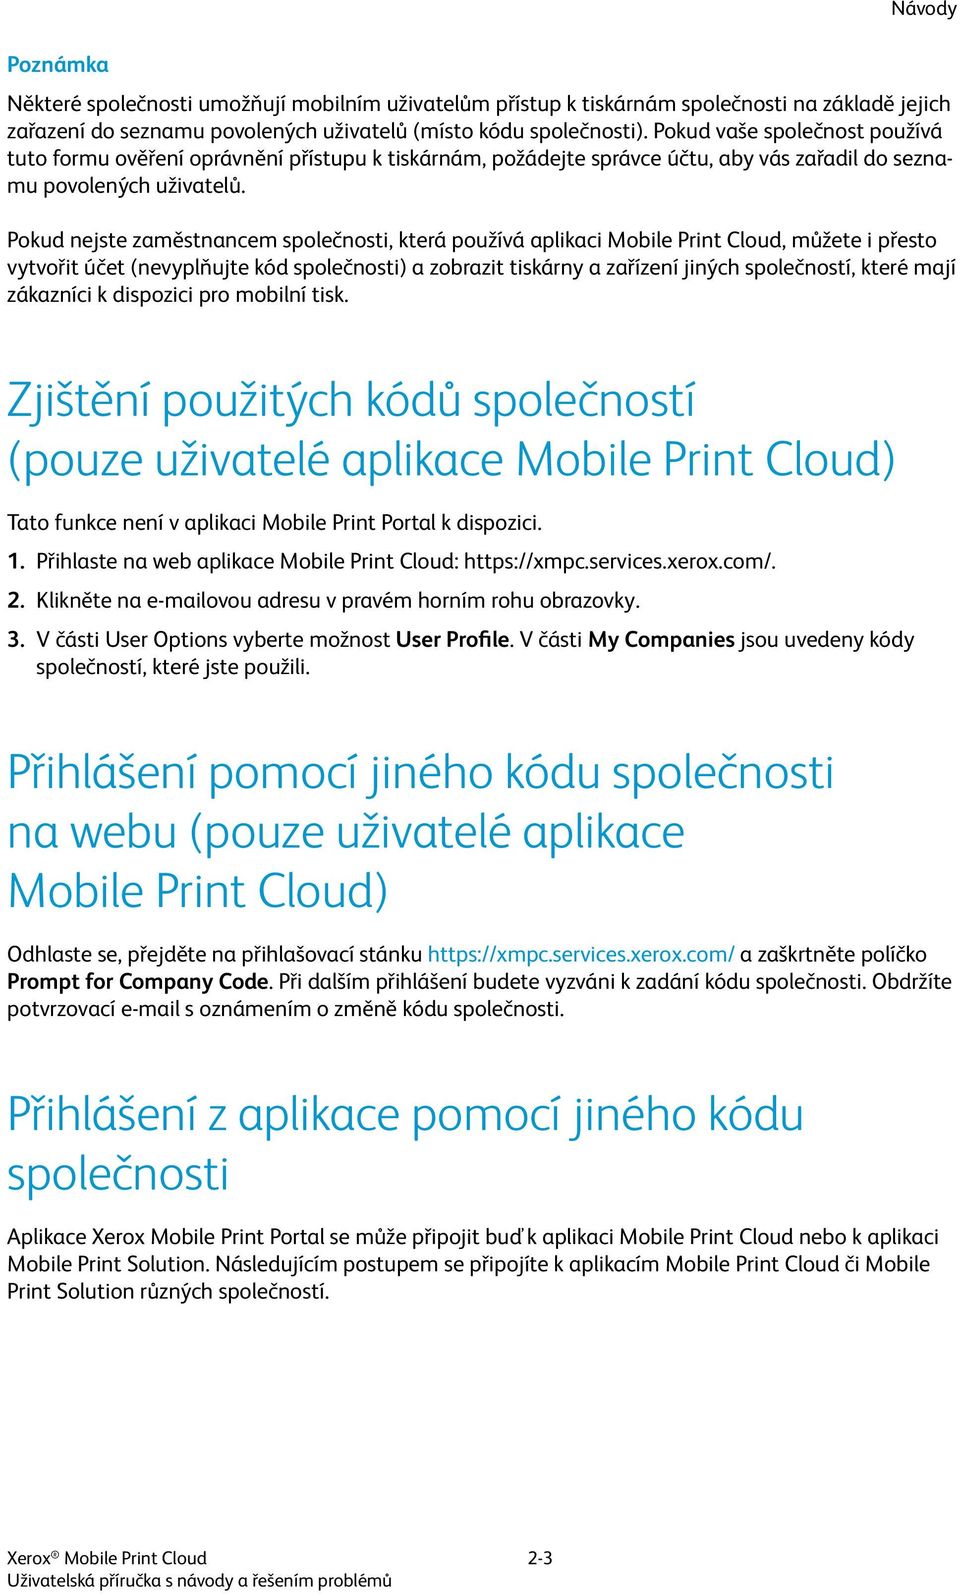 Pokud nejste zaměstnancem společnosti, která používá aplikaci Mobile Print Cloud, můžete i přesto vytvořit účet (nevyplňujte kód společnosti) a zobrazit tiskárny a zařízení jiných společností, které